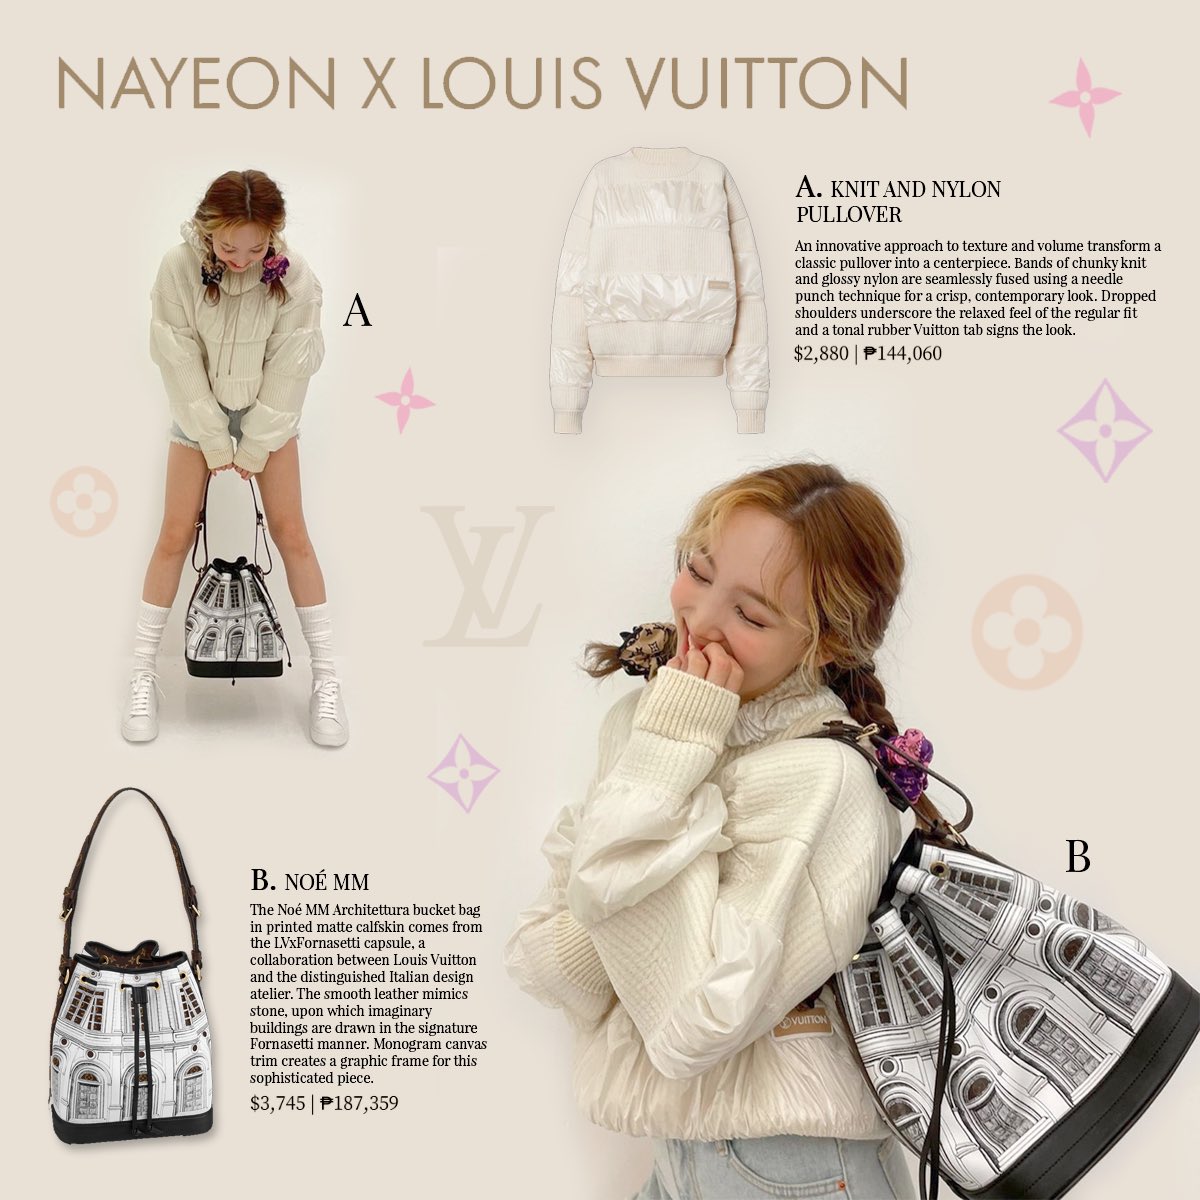 221203 LouisVuitton Twitter Update - Nayeon at the Louis Vuitton x